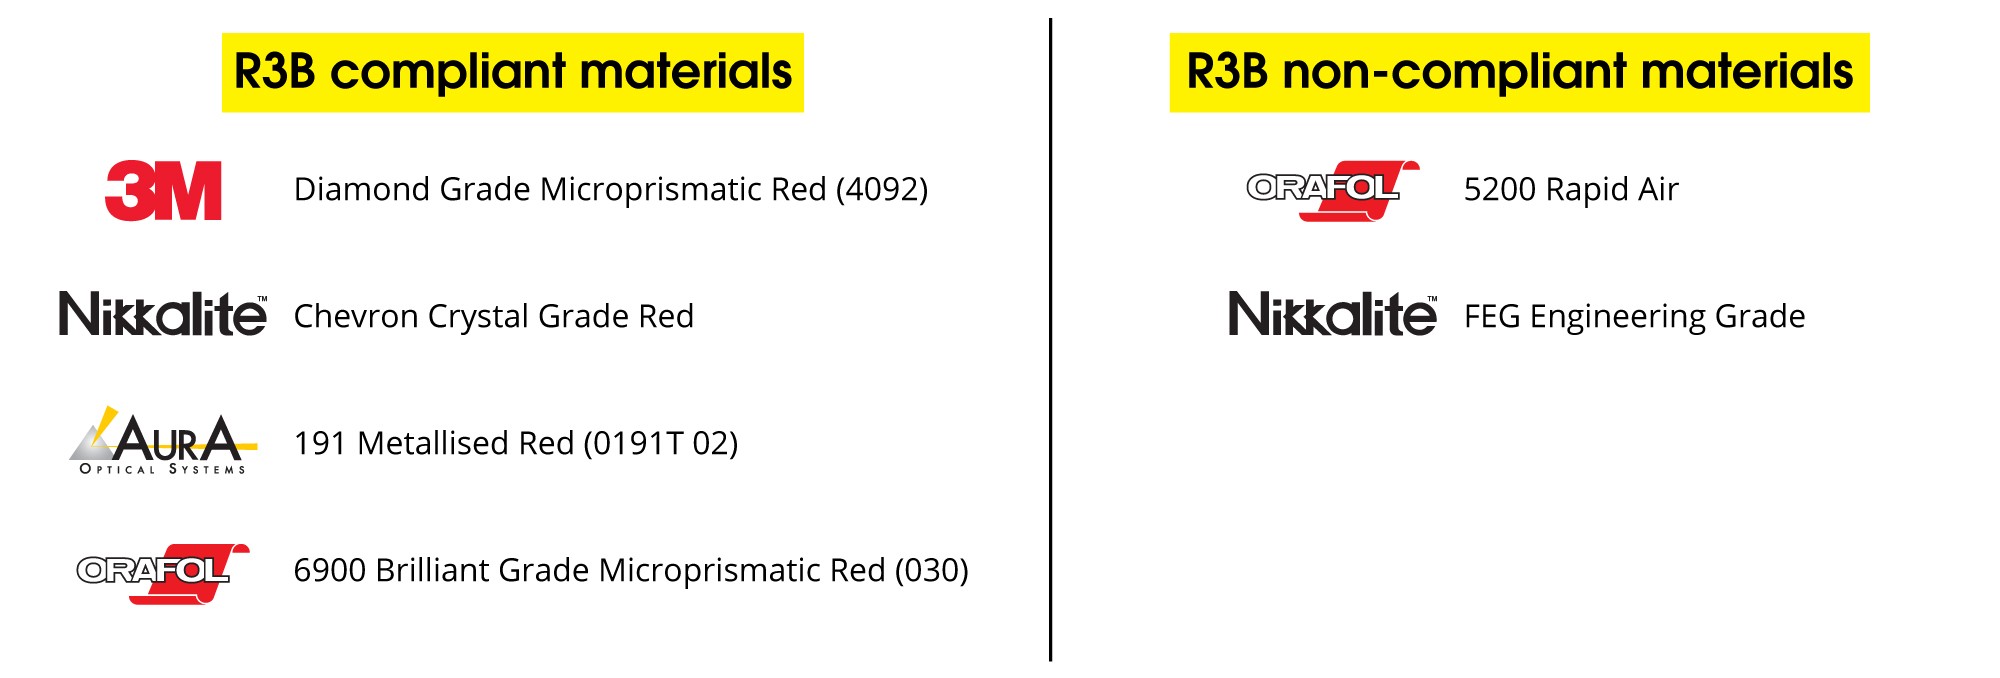 R3B compliant and non-compliant materials